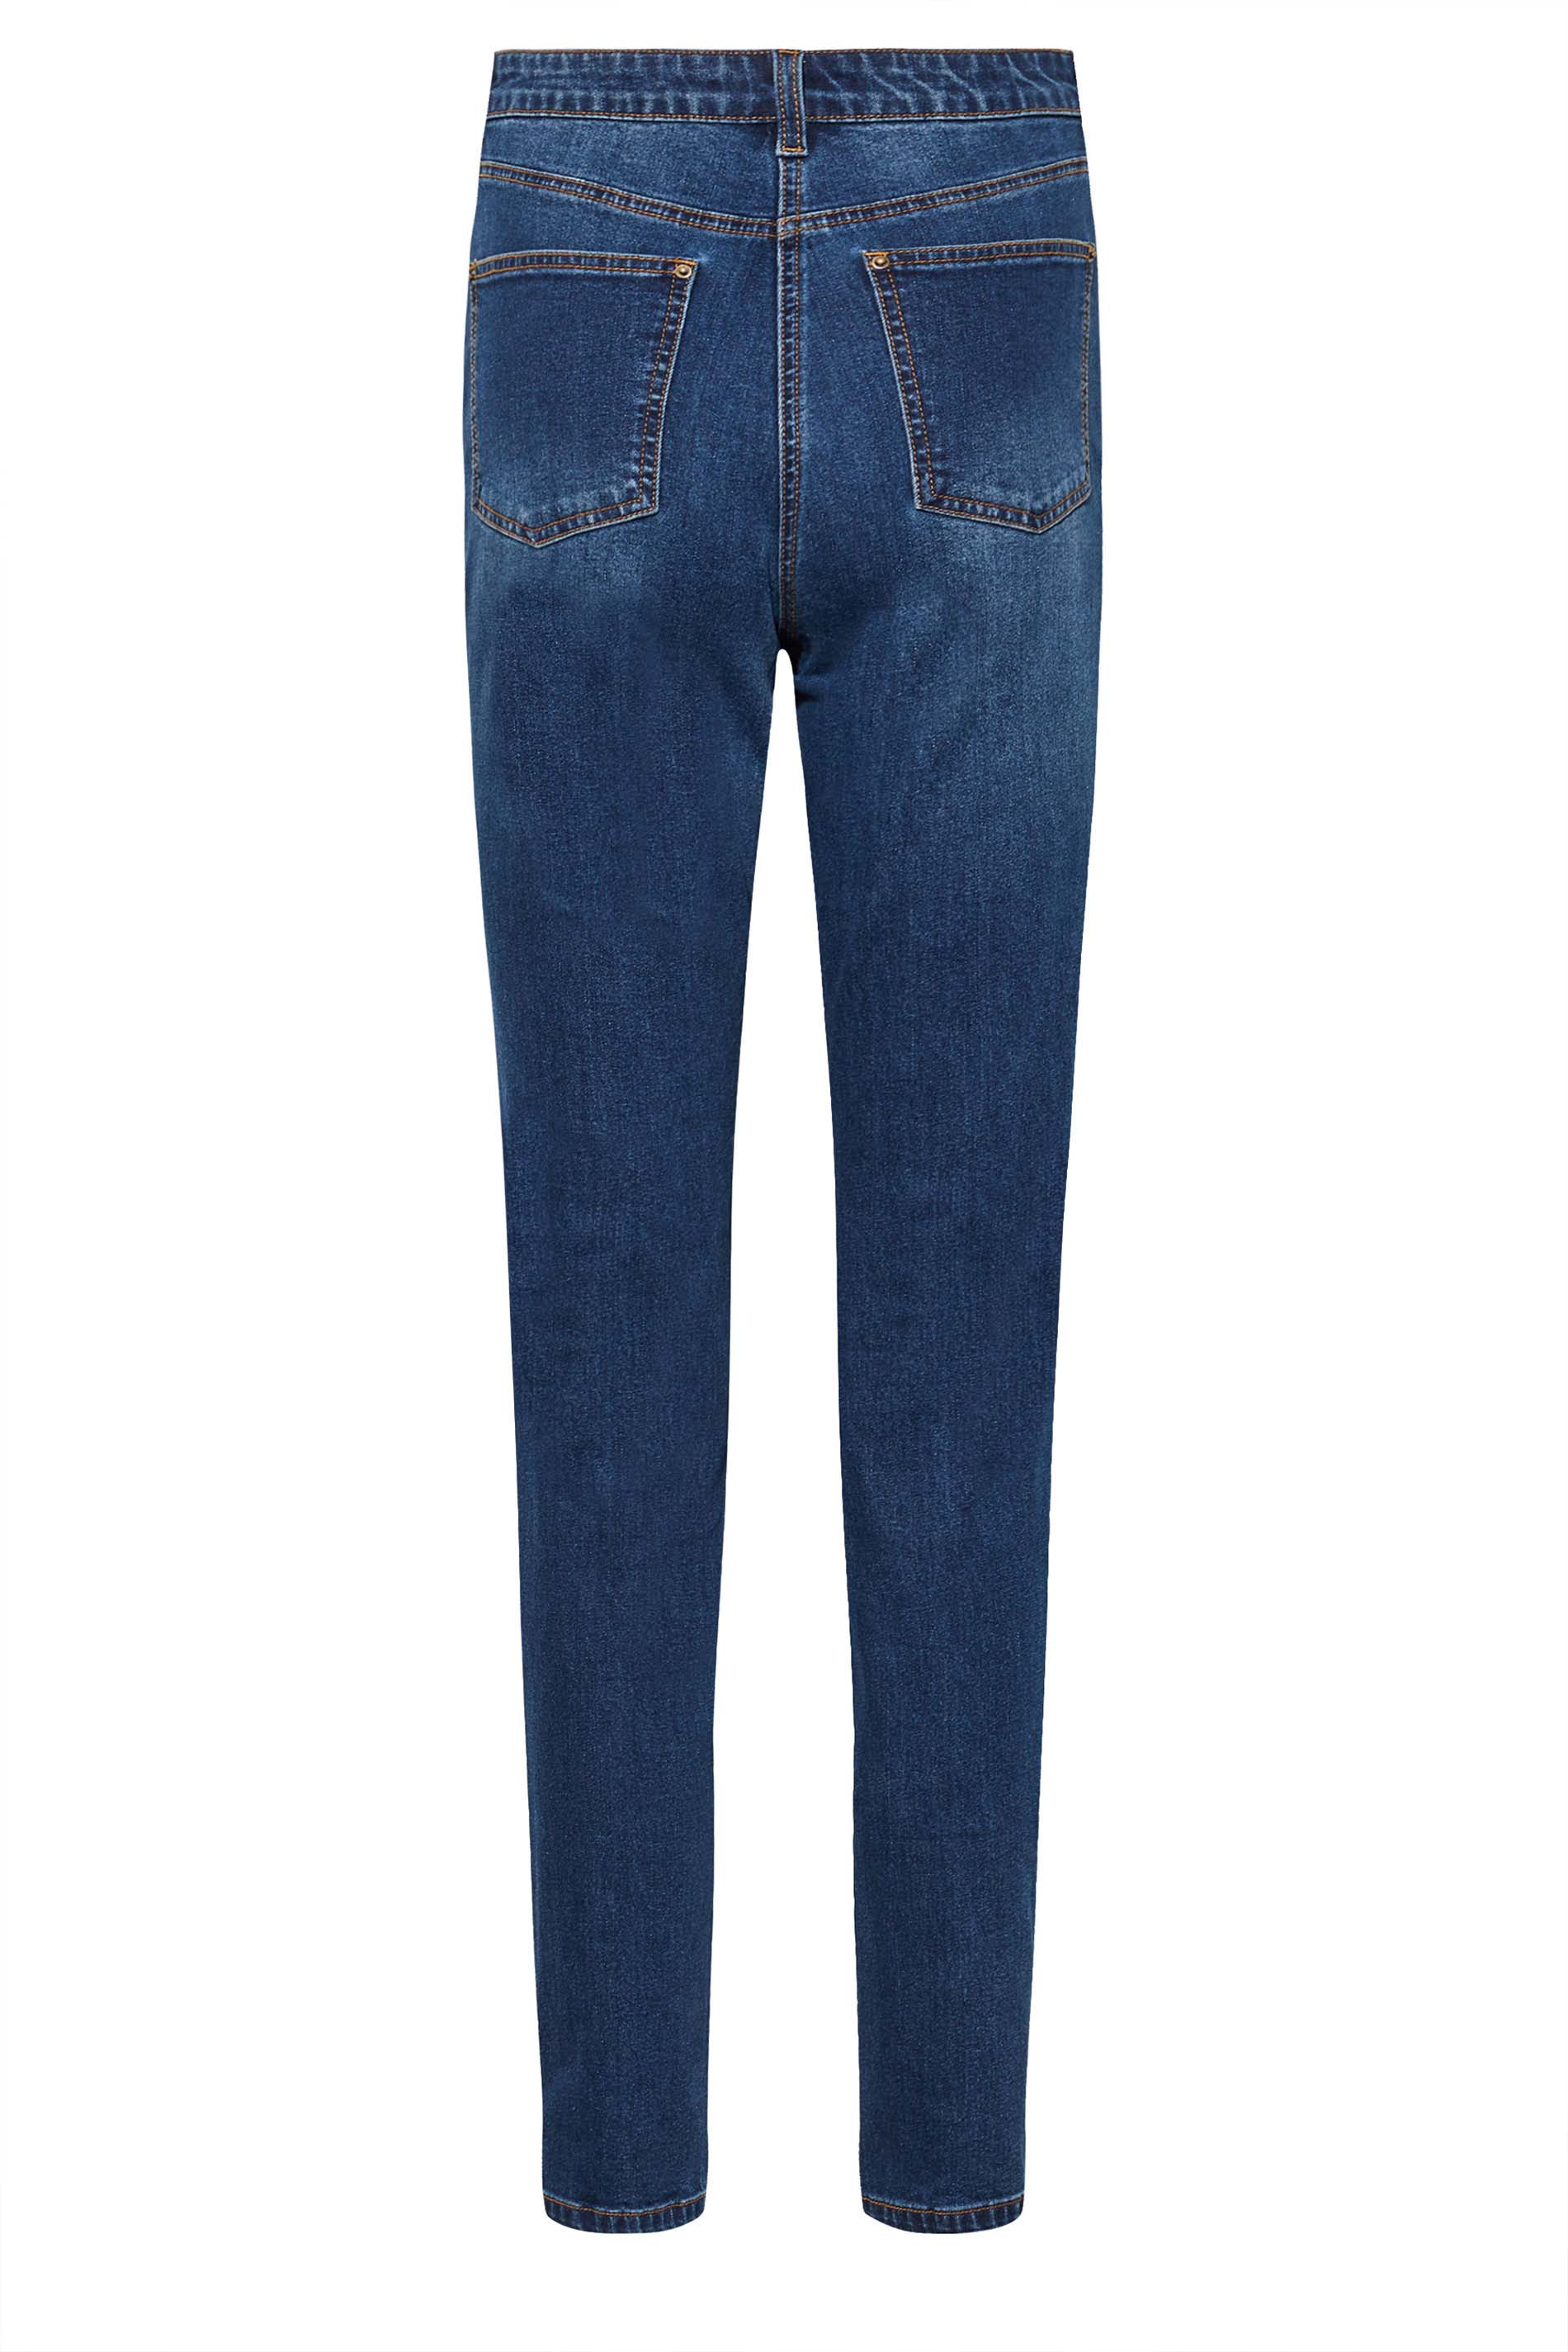 LTS Tall Women's Blue Distressed UNA Mom Jeans | Long Tall Sally 3